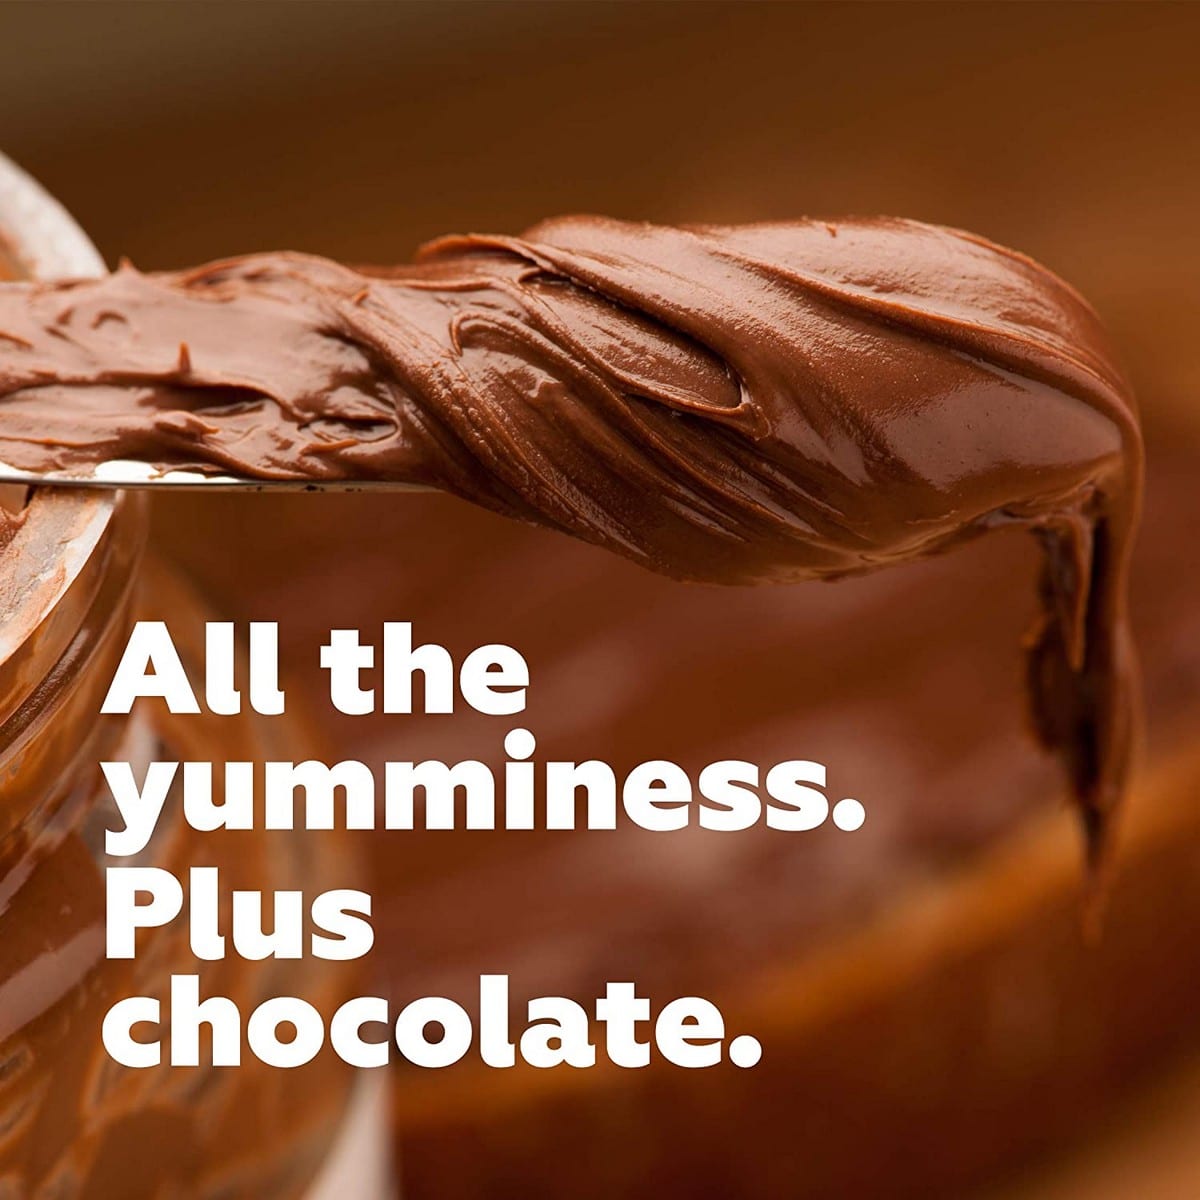 Buy Yogabar Dark Chocolate Peanut Butter 1 kg